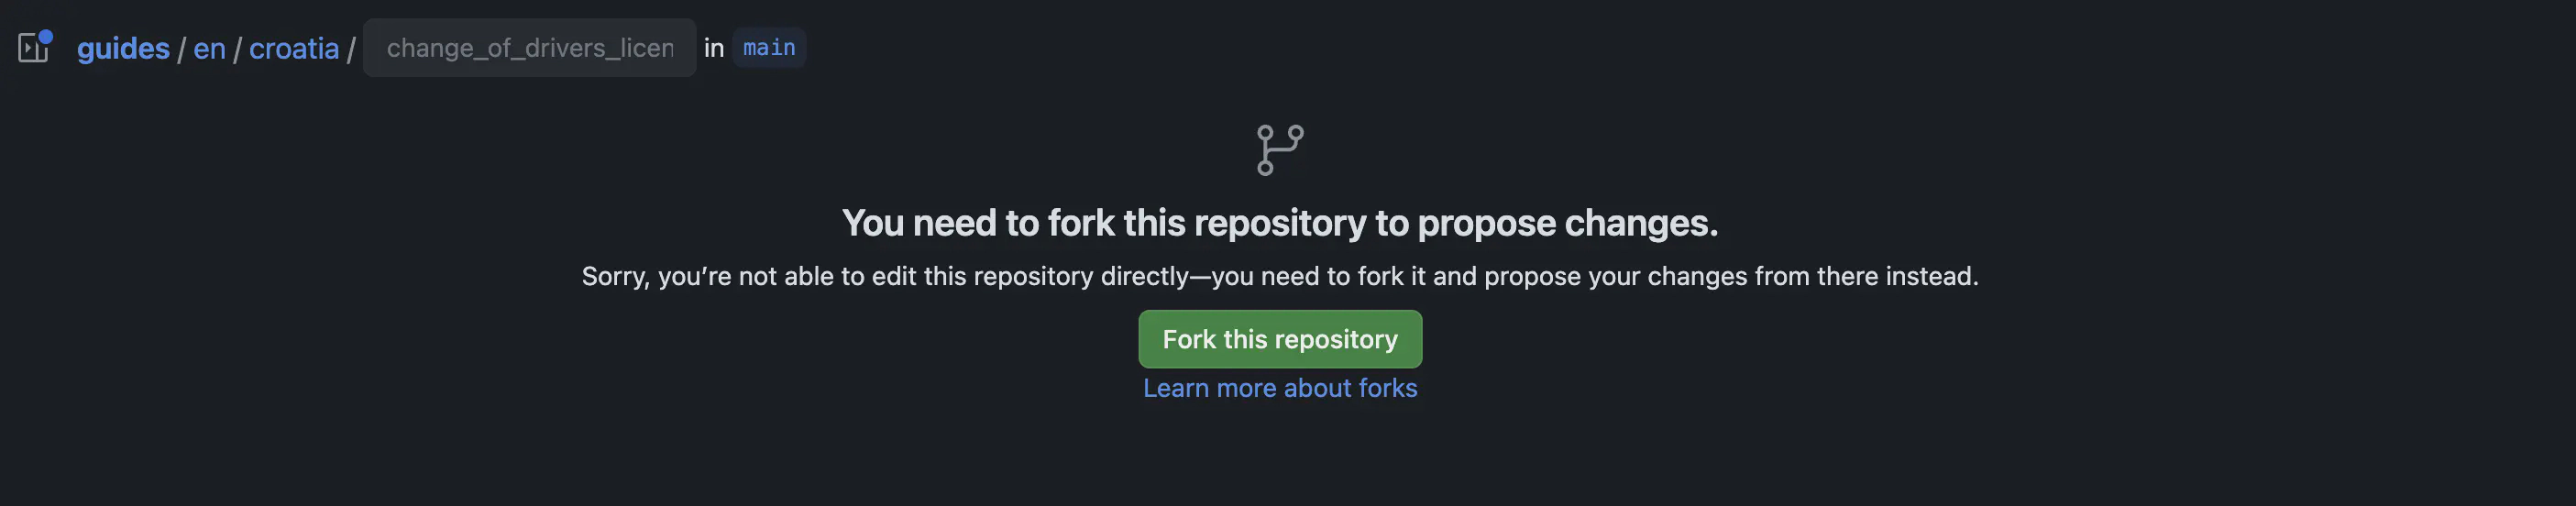 Laat zien hoe je een repository kunt fork-en